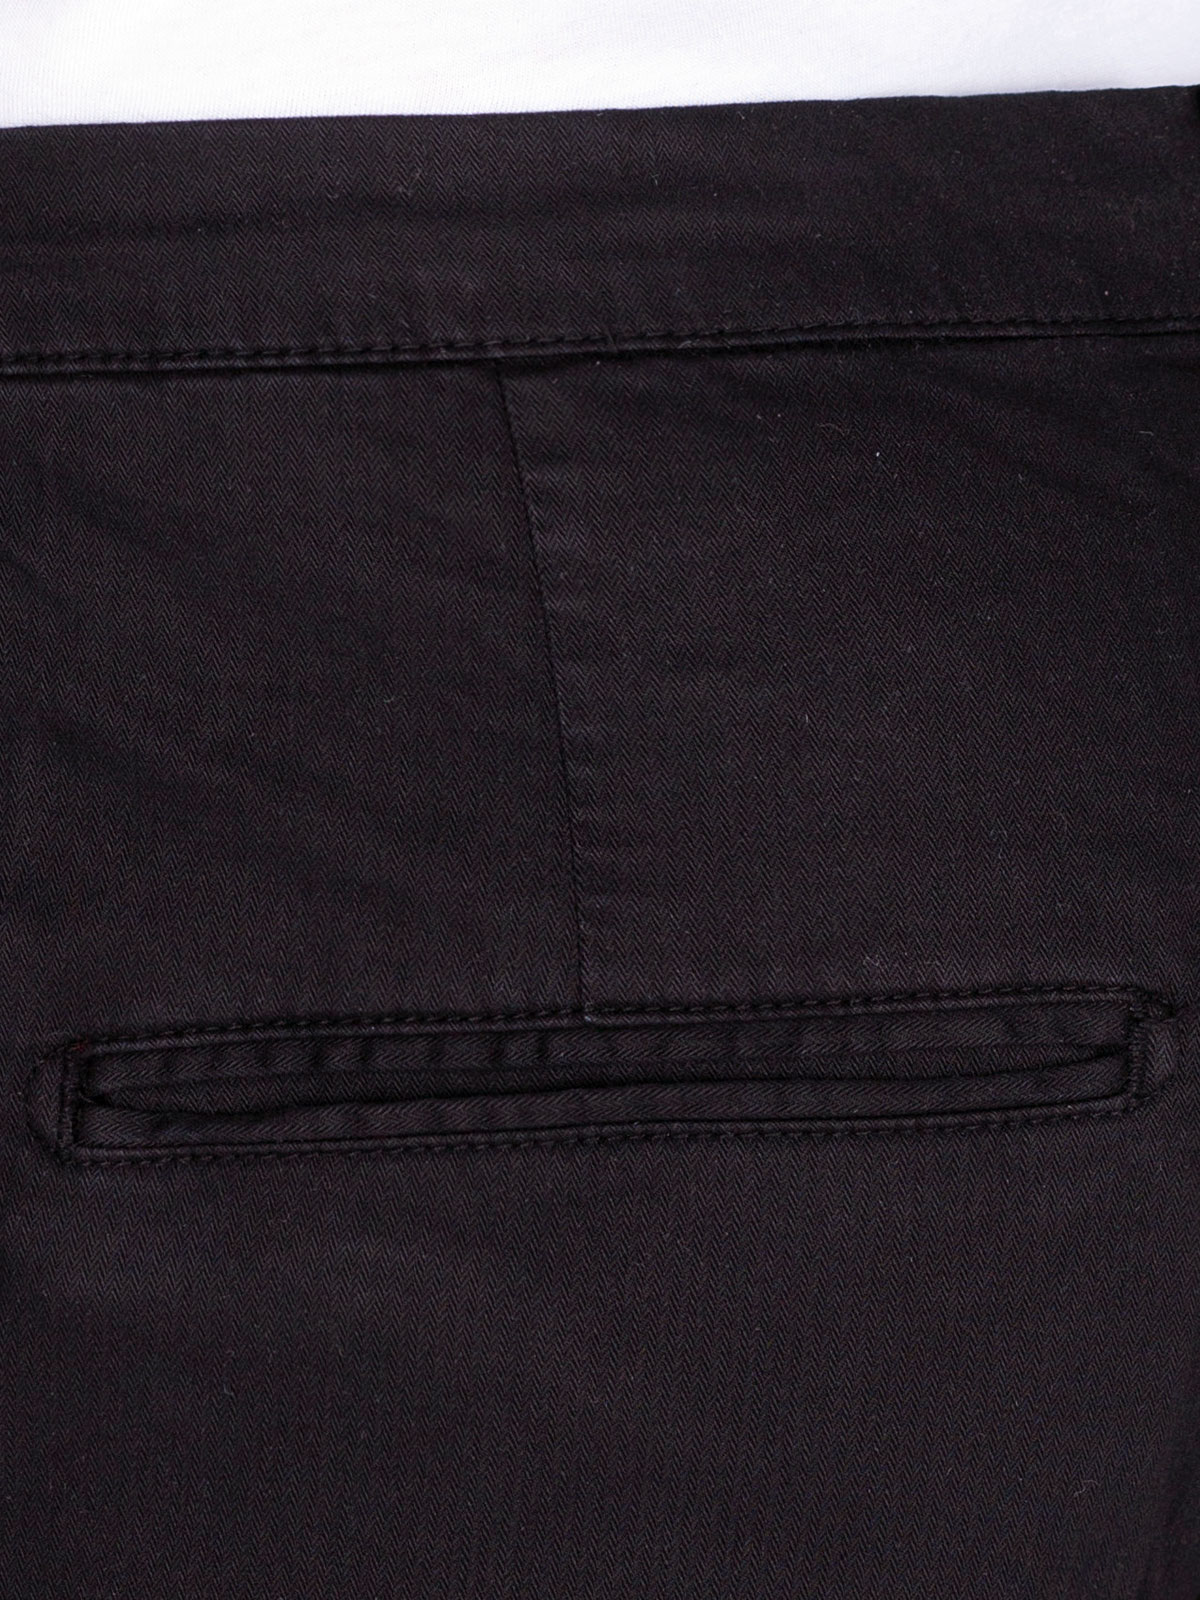 Модерни мъжки панталони  с връзки - 60284 109.00 лв img4